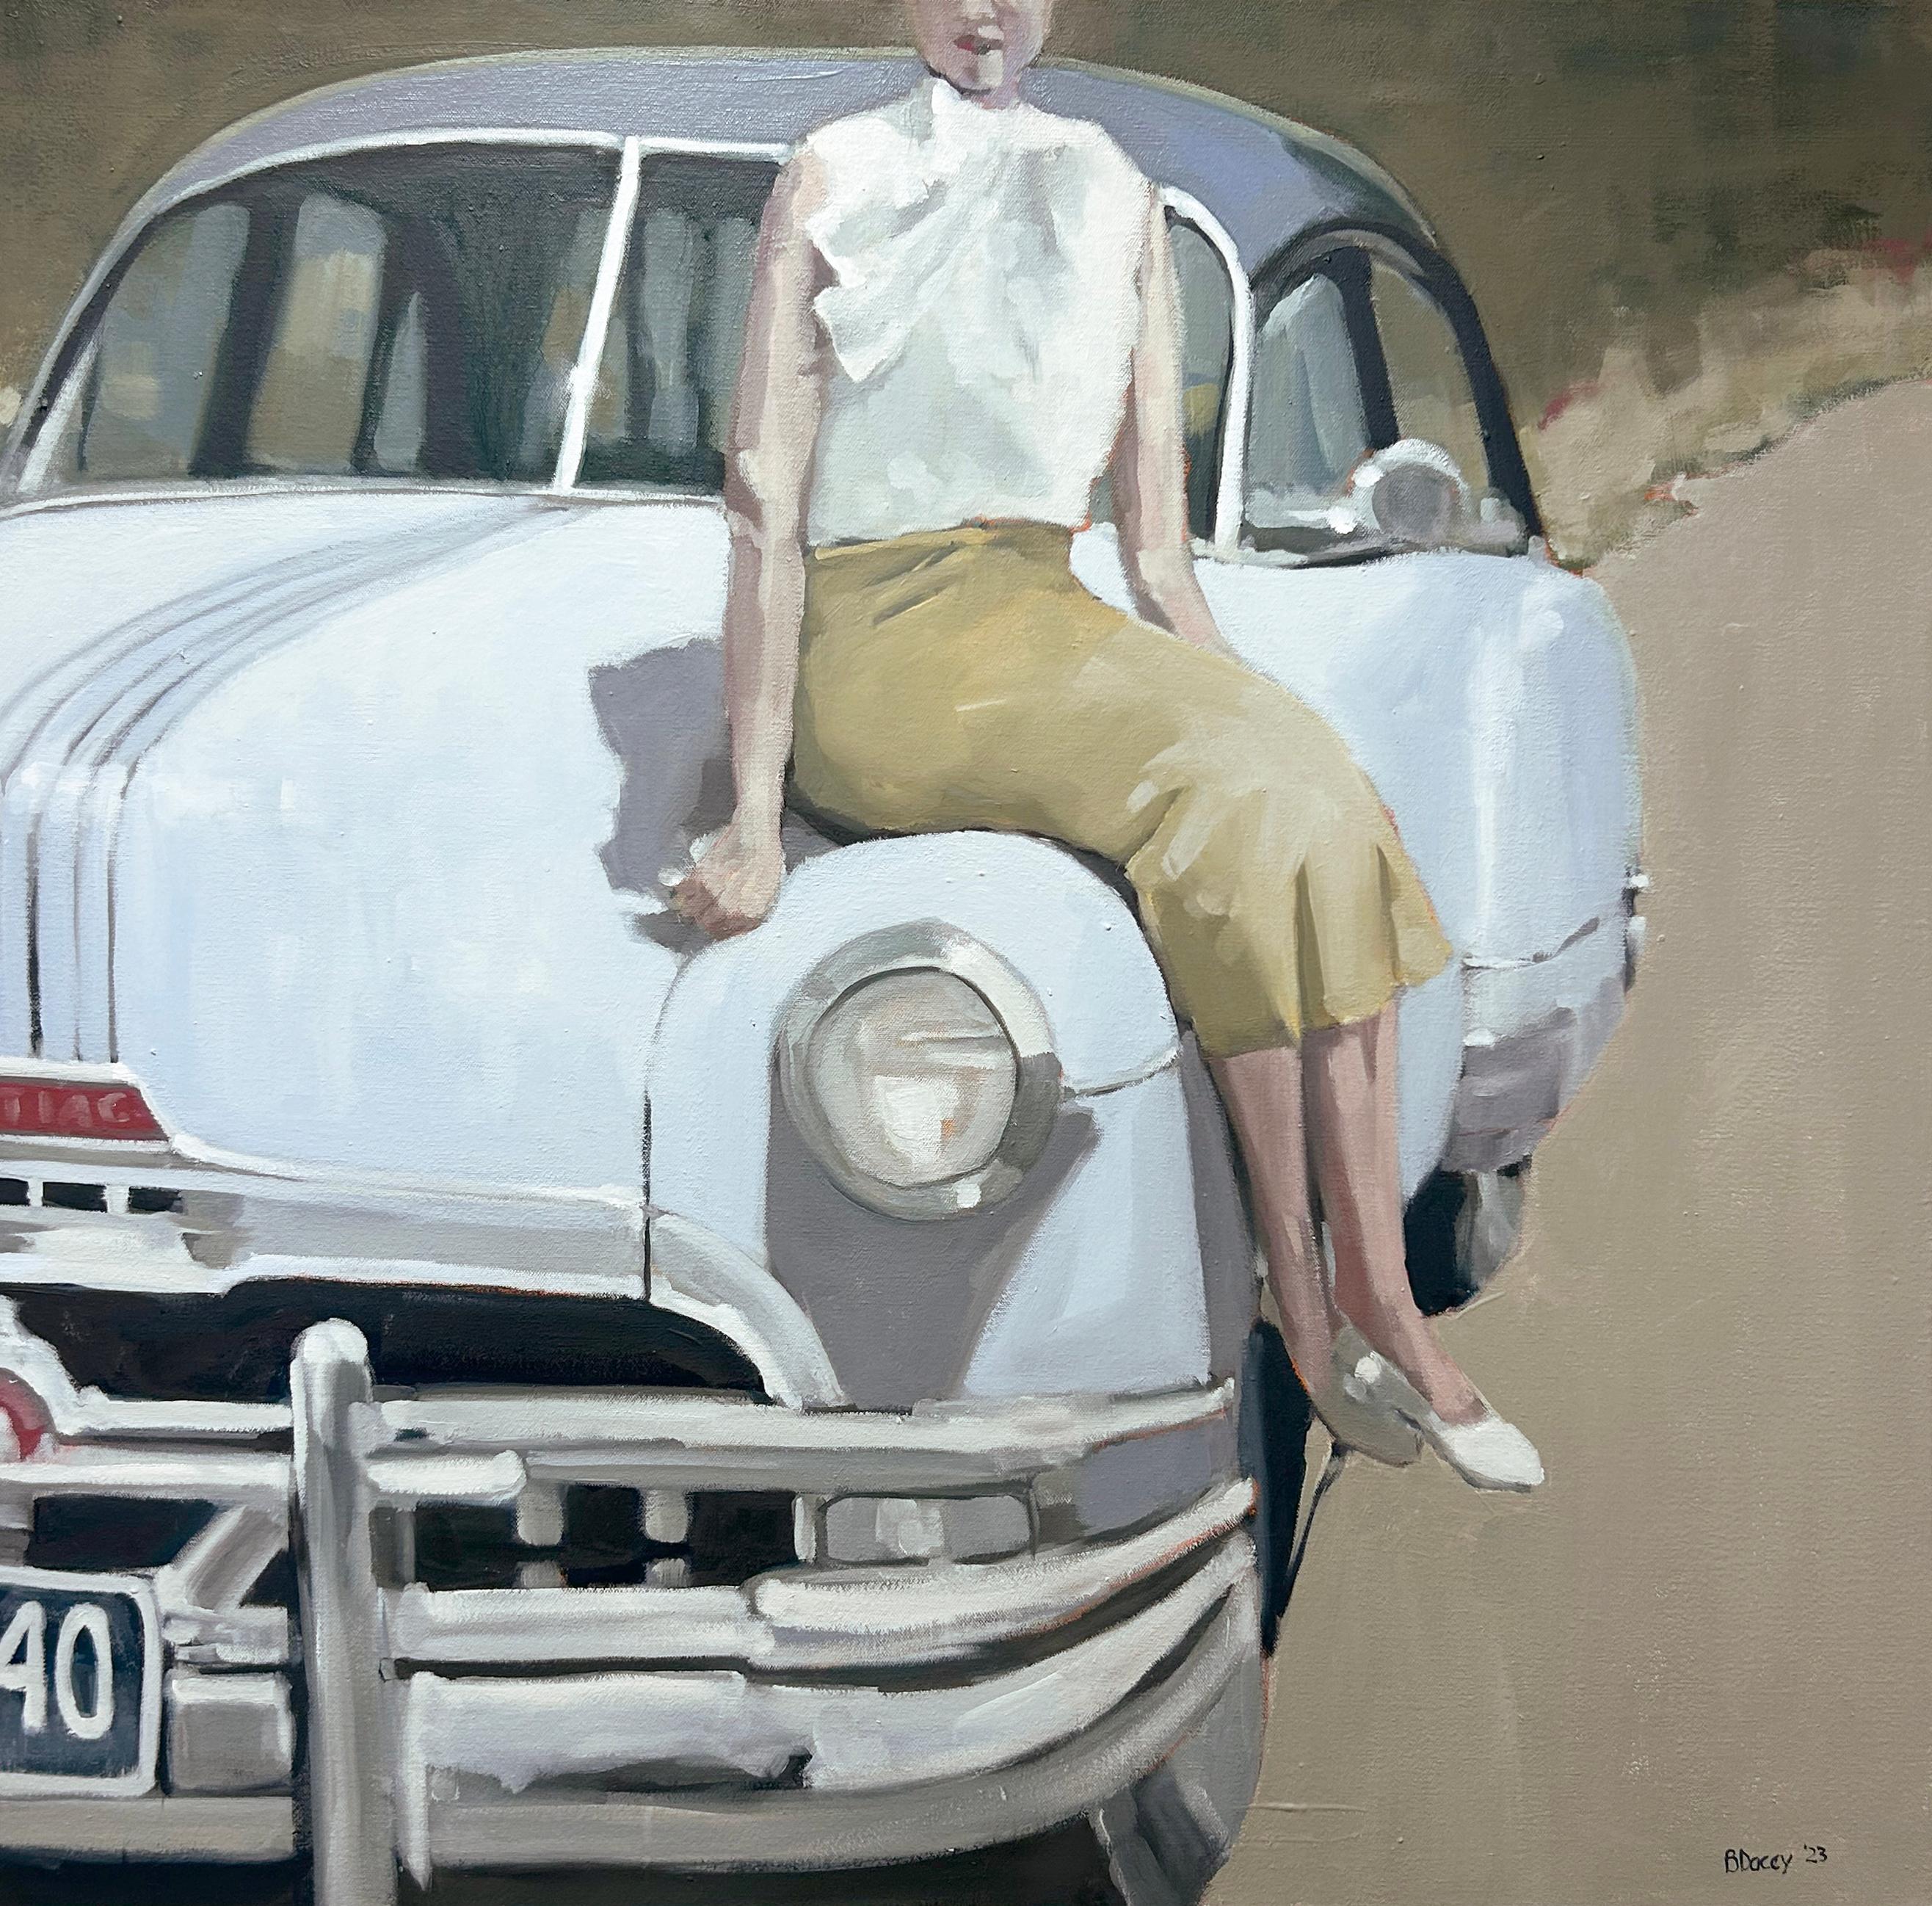 Beth Daceys "Frau mit blauem Auto" ist ein 36x36 großes Ölgemälde auf Leinwand, das eine Frau in einem ockerfarbenen Rock, einer weißen Bluse und hochhackigen Schuhen zeigt.  Sie posiert neben einem babyblauen Oldtimer.

Dacey lässt sich von alten,